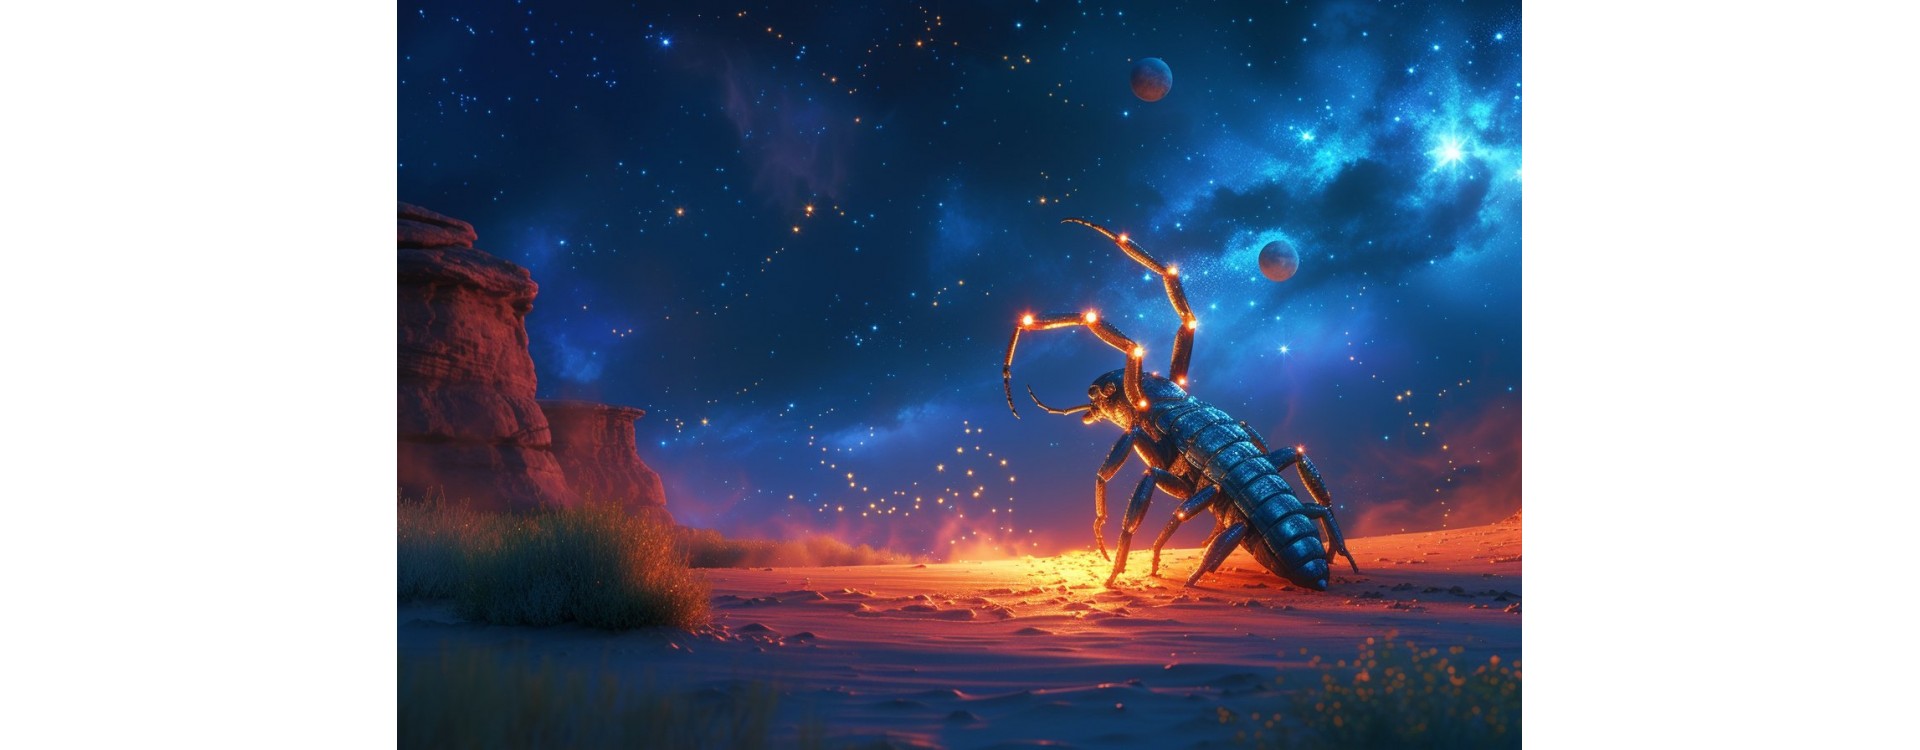 Astrologie : Tout savoir sur le signe du zodiaque Scorpion